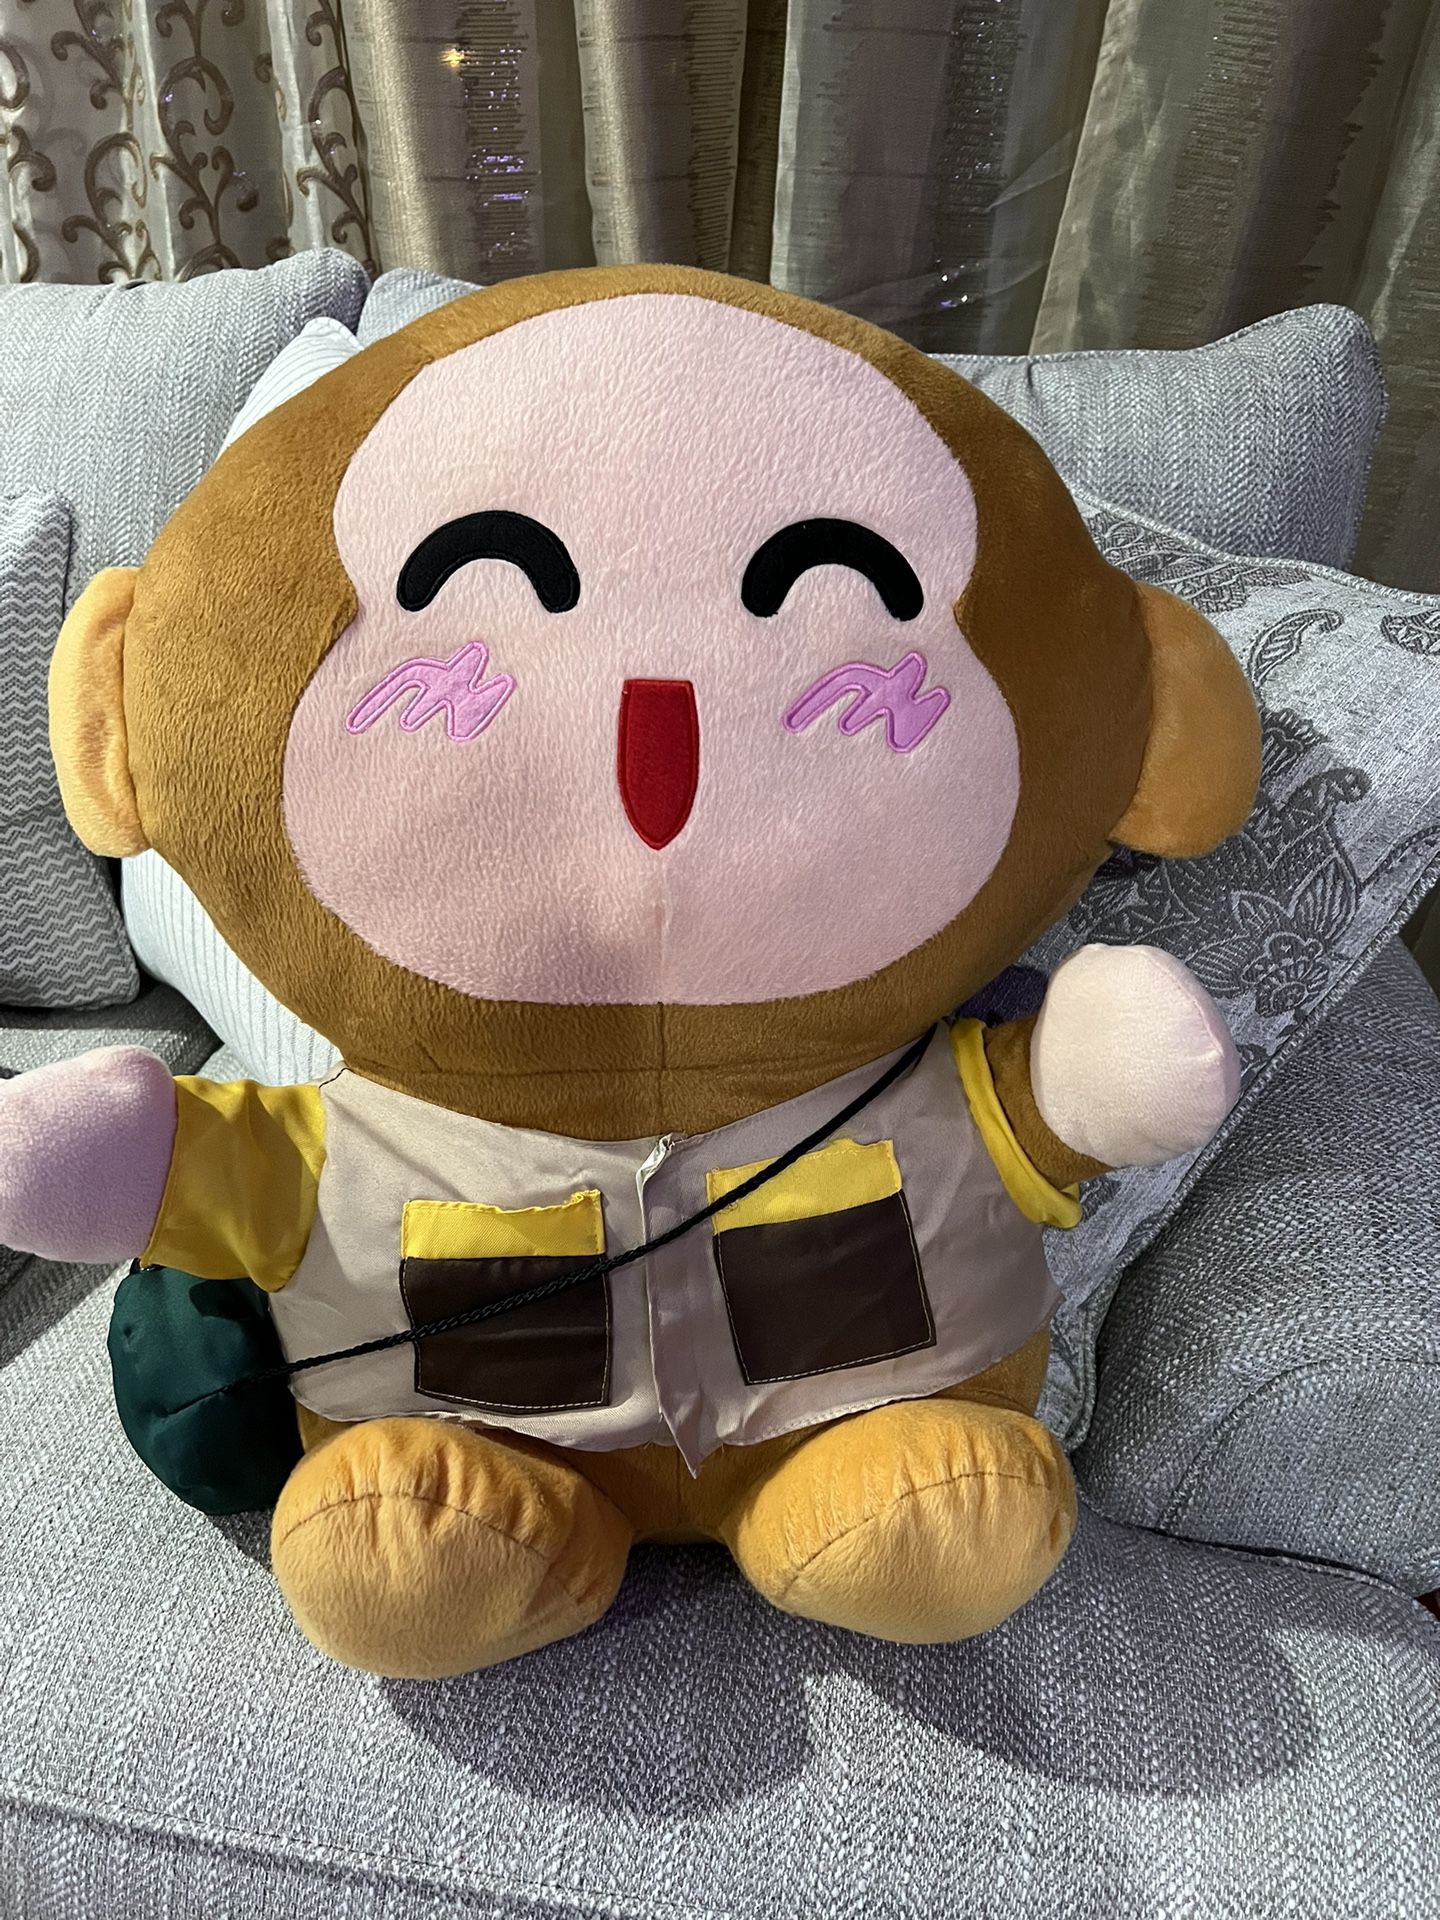 Huge Monkey / Stuffed Toy